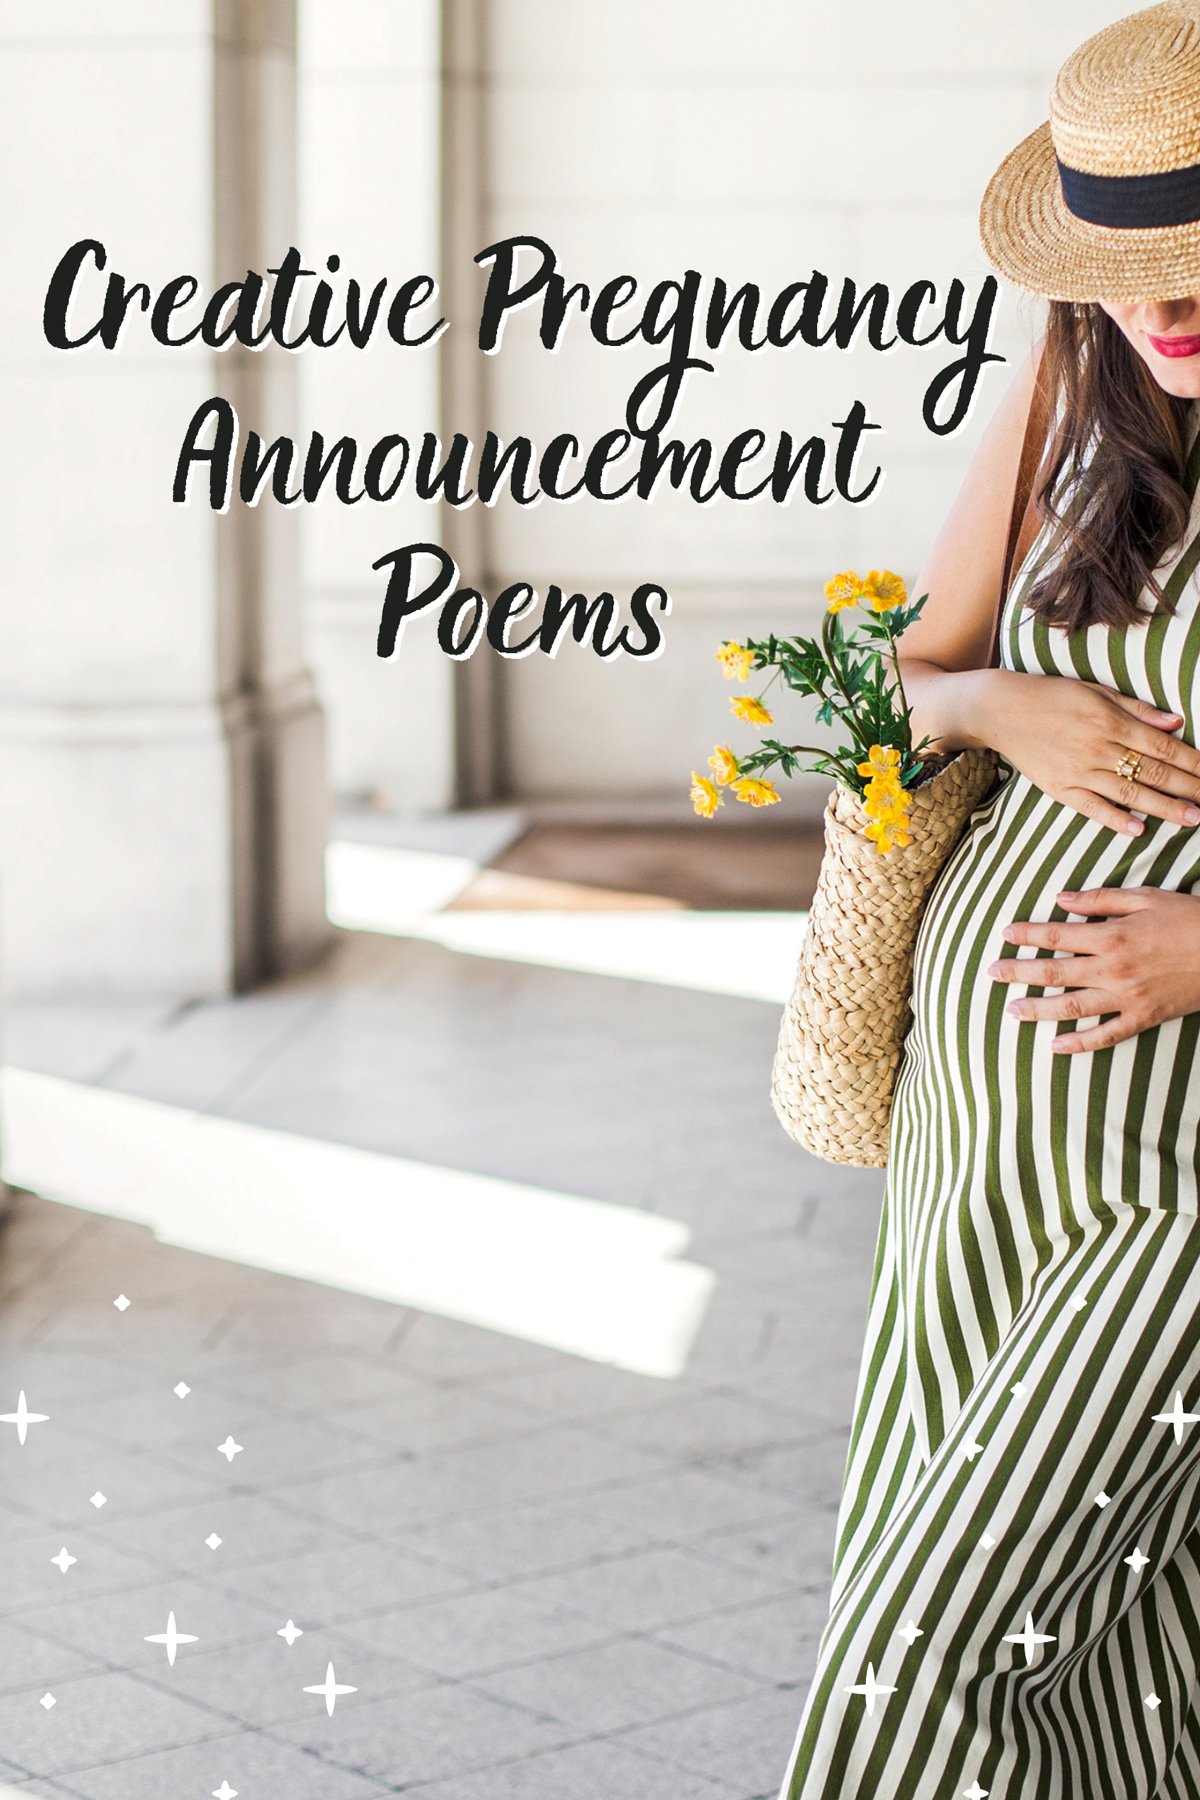 Pregnancy Announcement poems